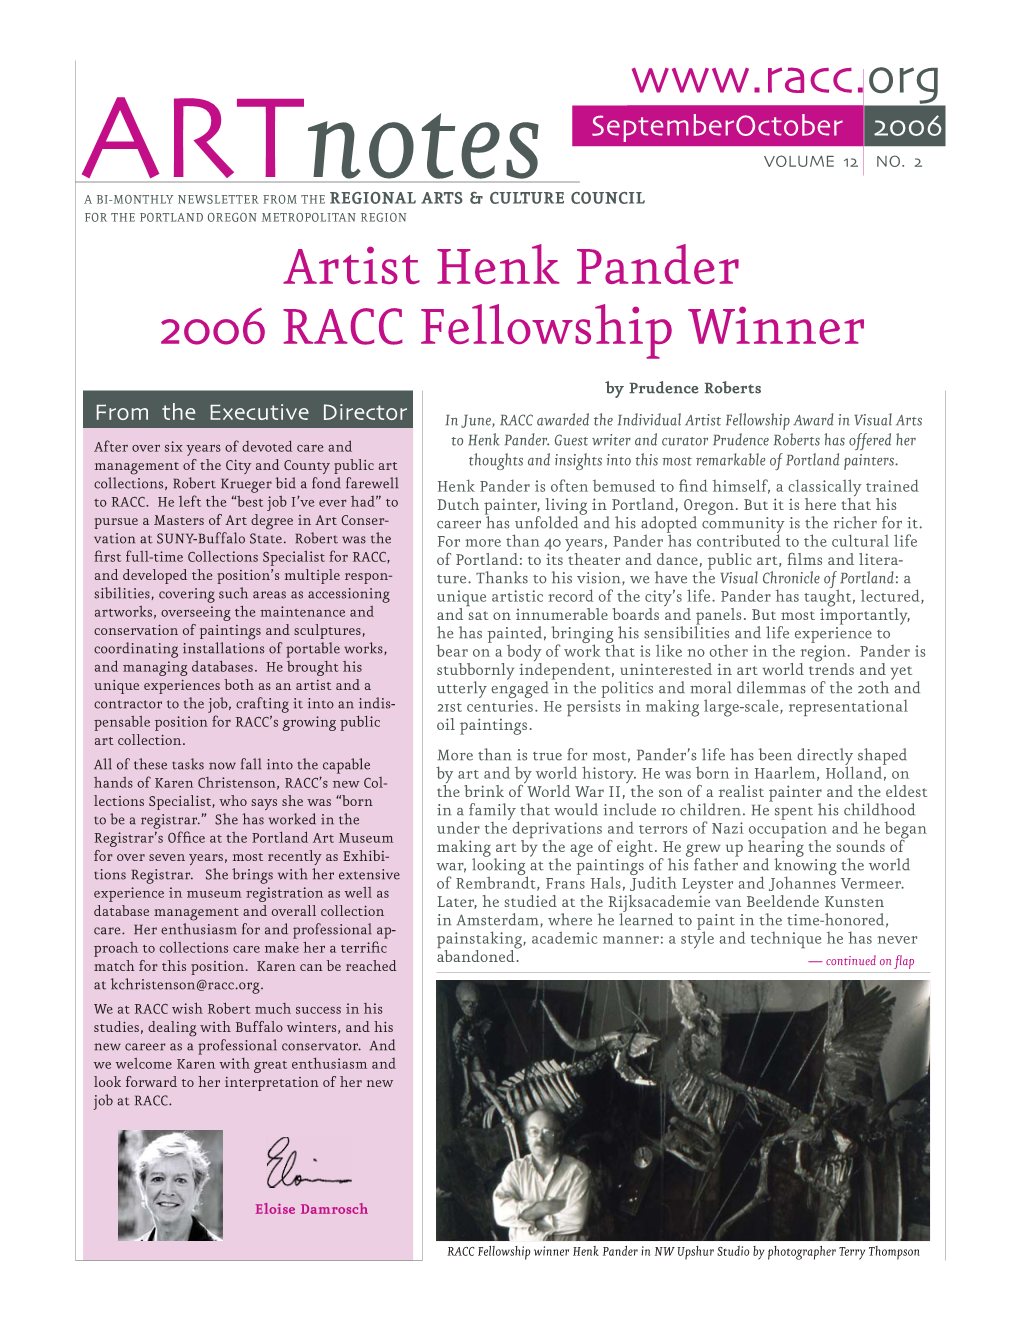 Artist Henk Pander 2006 RACC Fellowship Winner